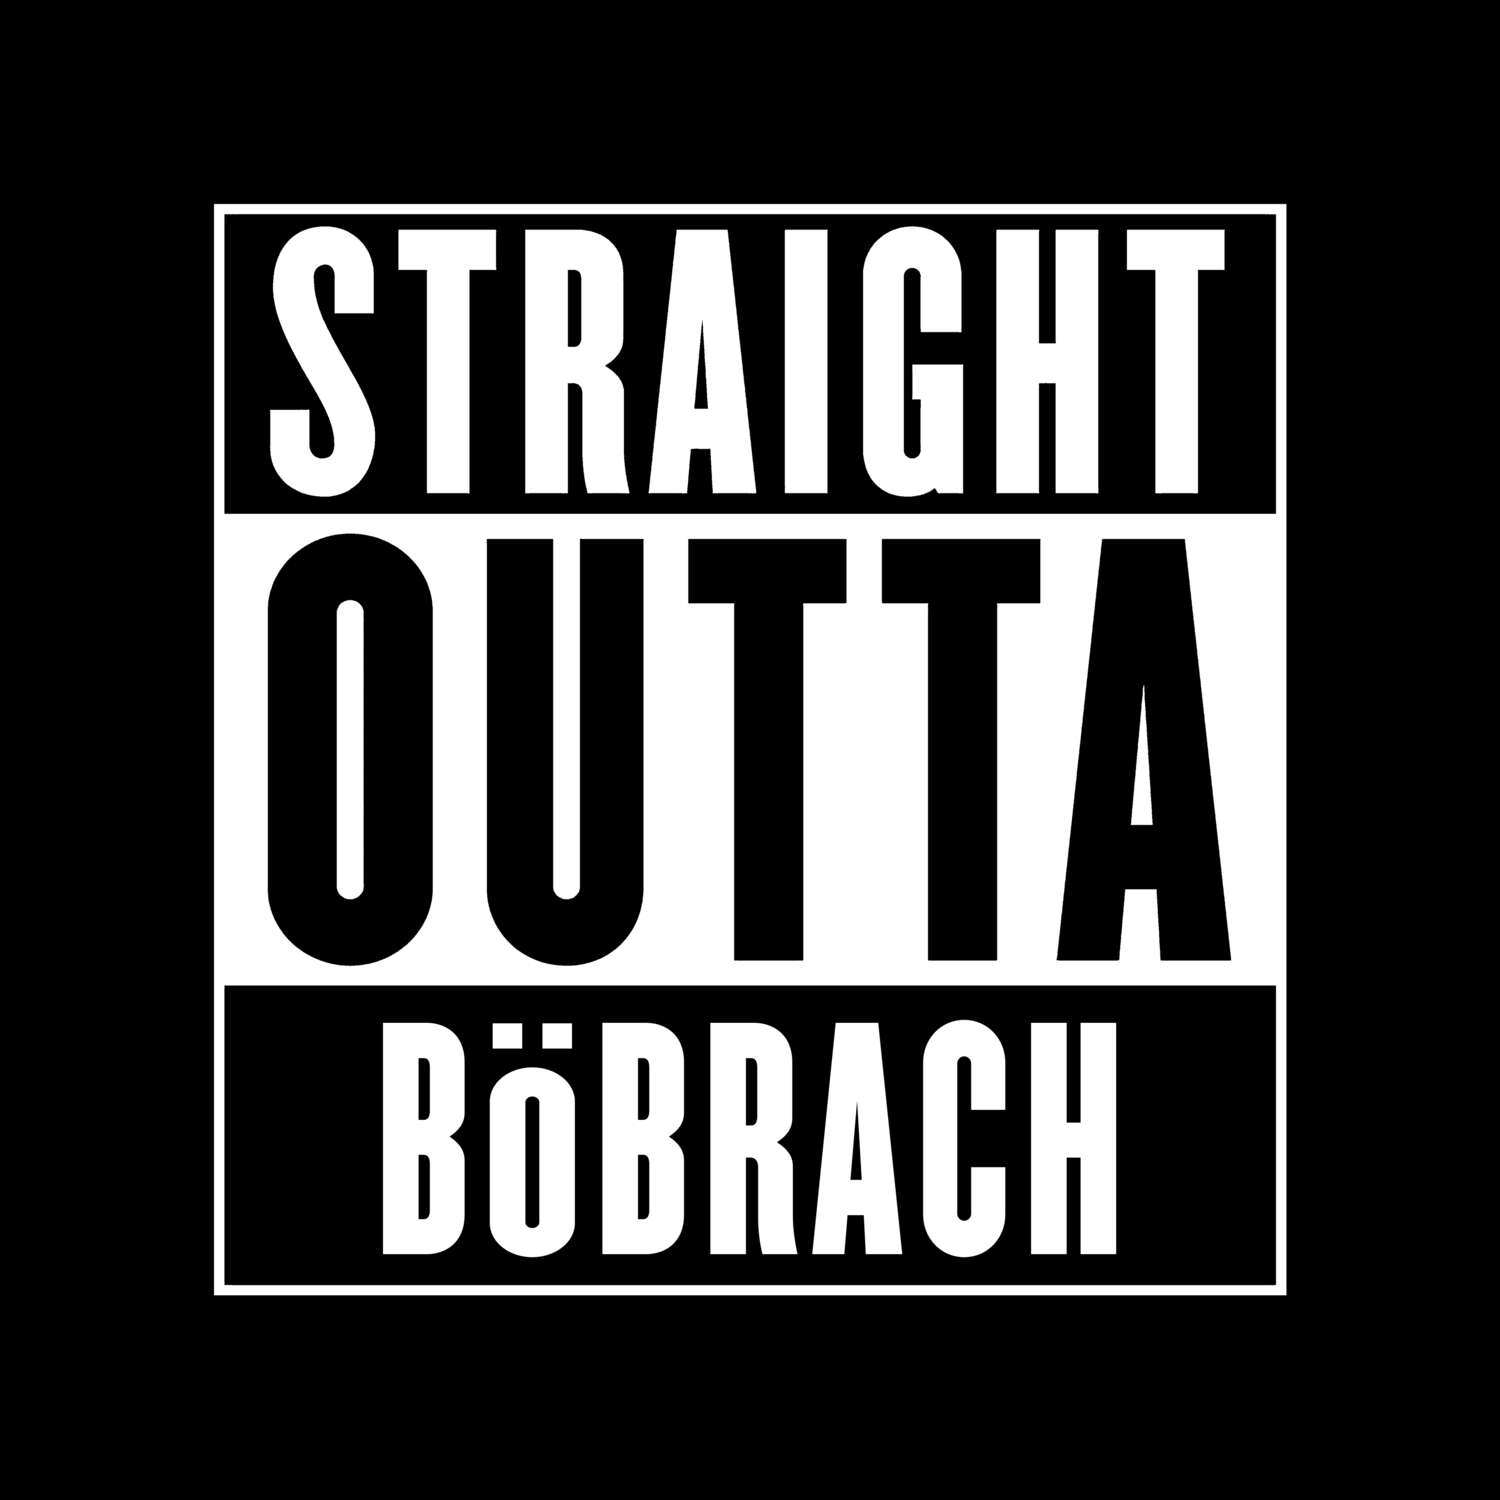 Böbrach T-Shirt »Straight Outta«